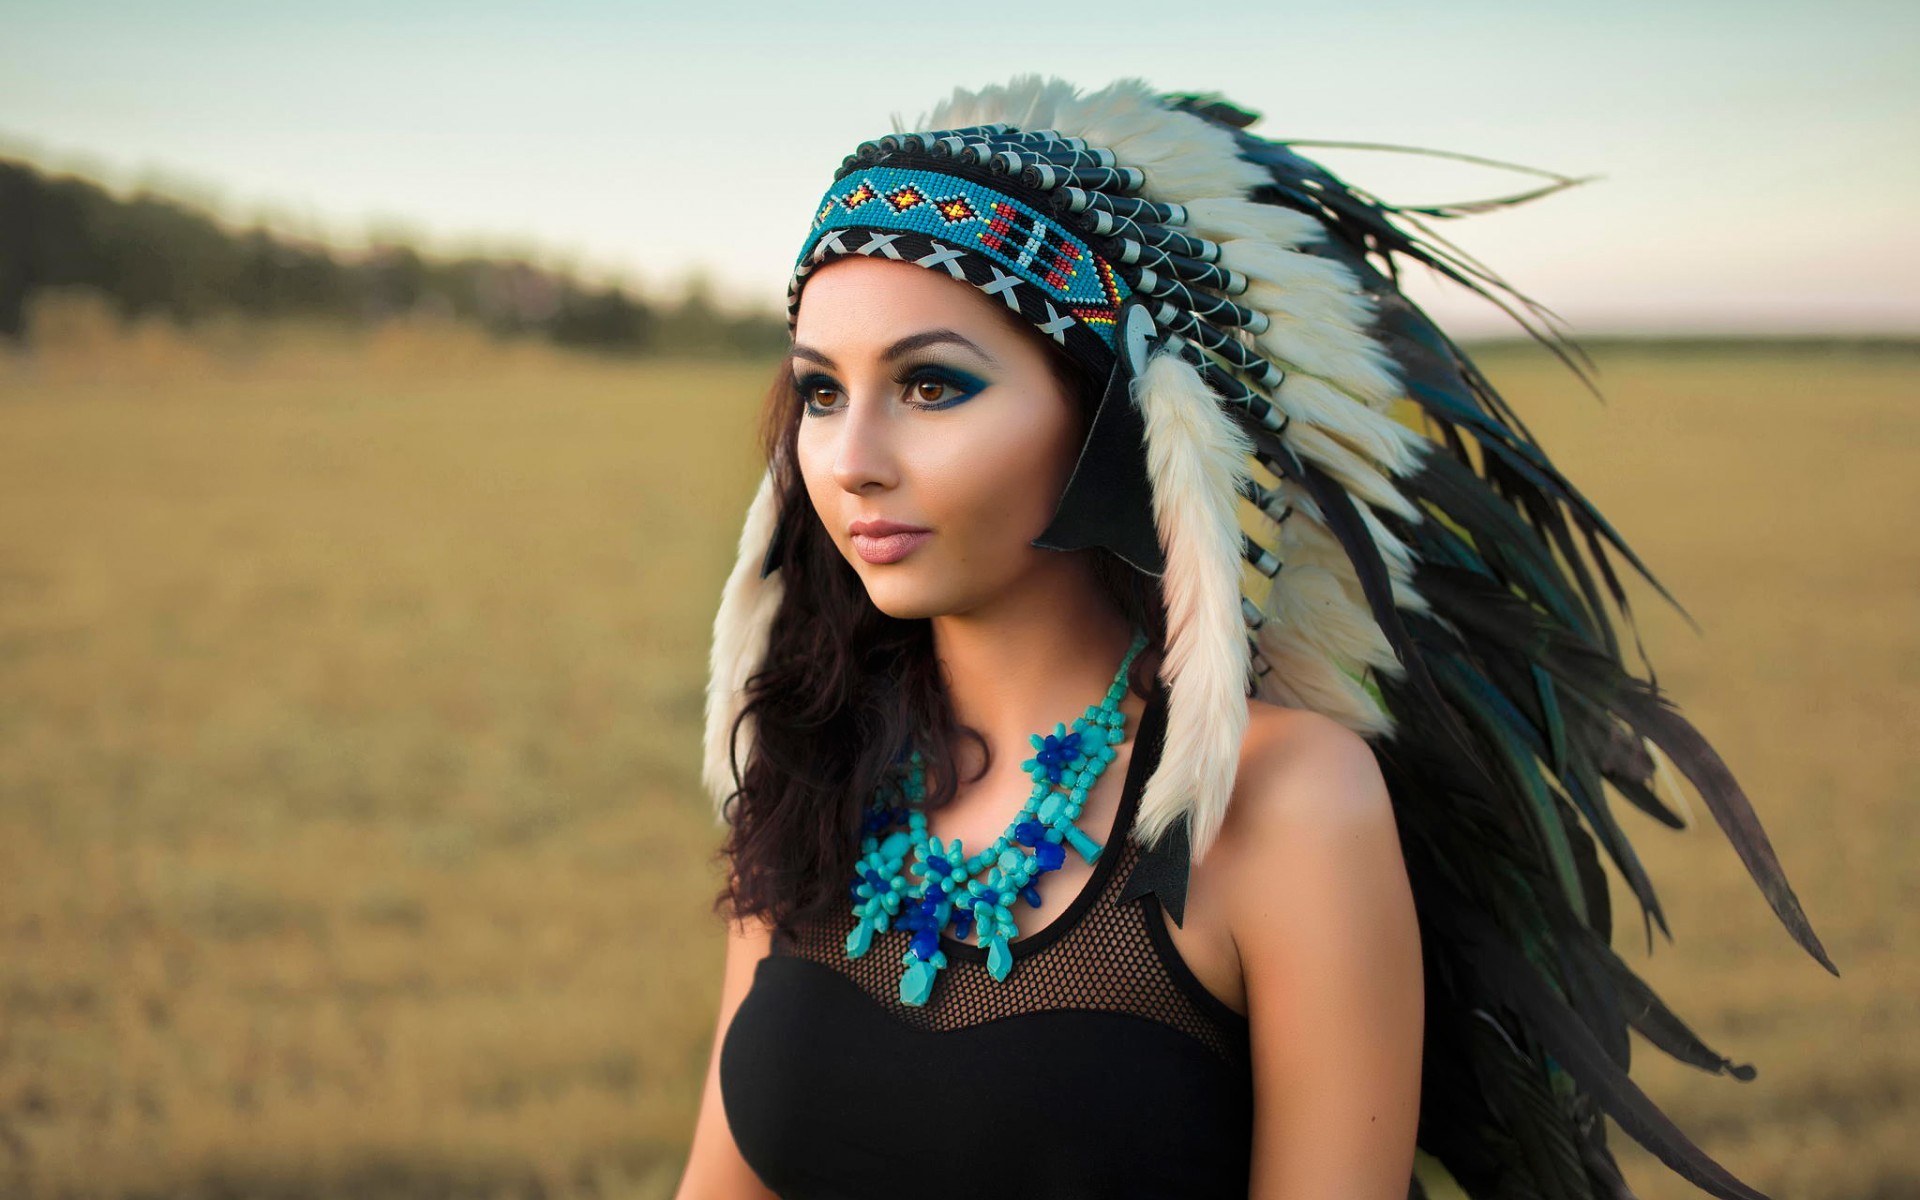 Native Headdress Girl Wallpapers For Desktop Native Headdress Girl Wallpapers Free Download